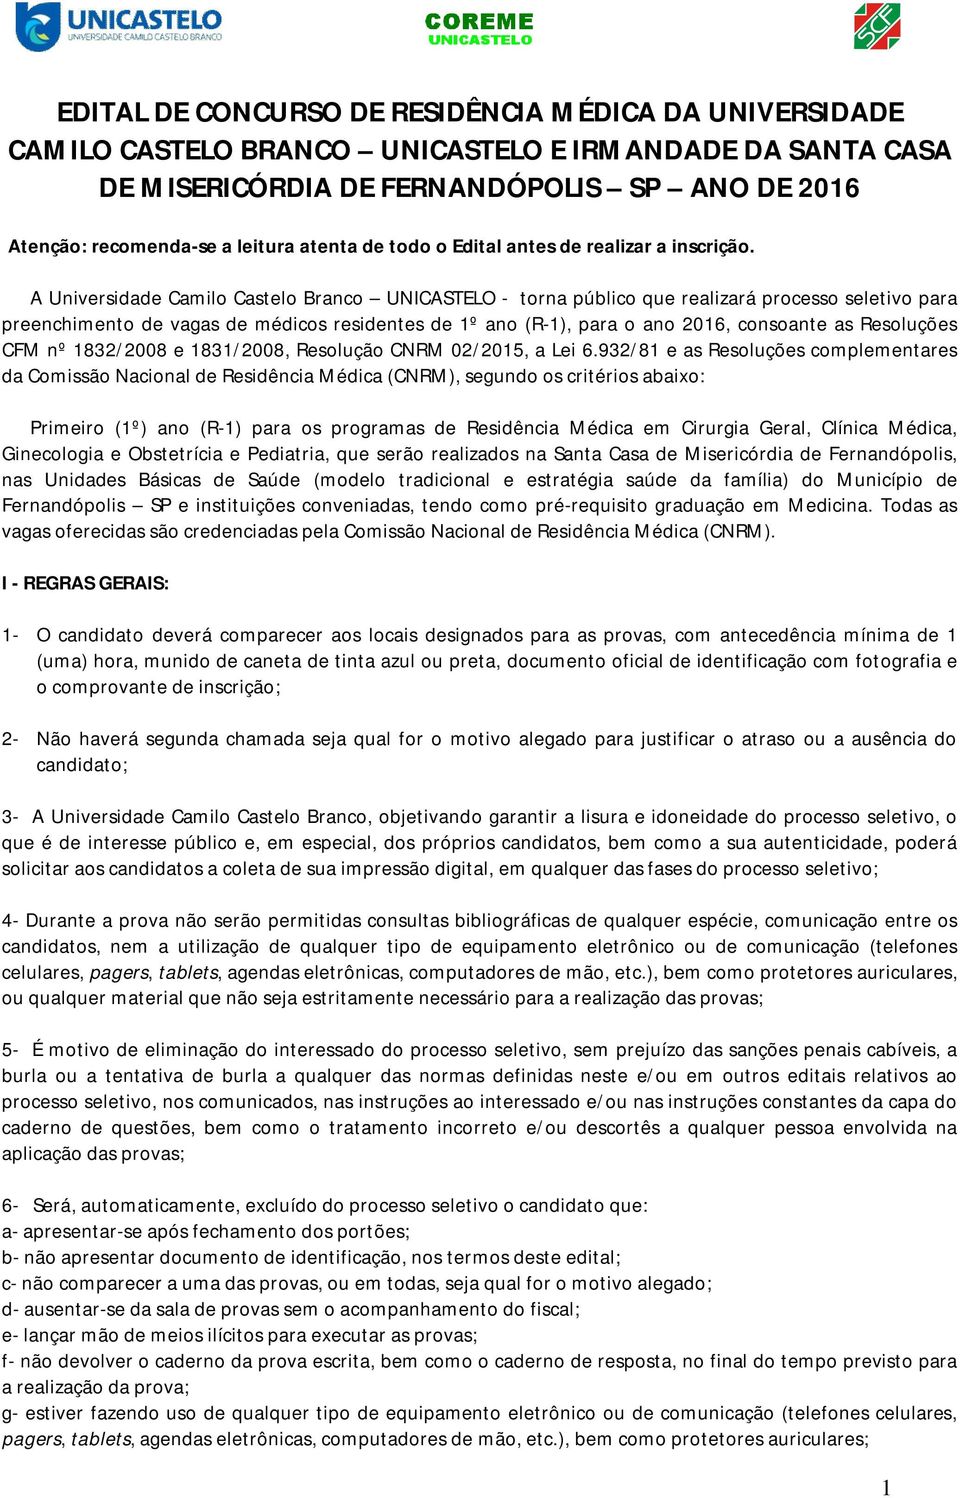 A Universidade Camilo Castelo Branco UNICASTELO - torna público que realizará processo seletivo para preenchimento de vagas de médicos residentes de 1º ano (R-1), para o ano 2016, consoante as